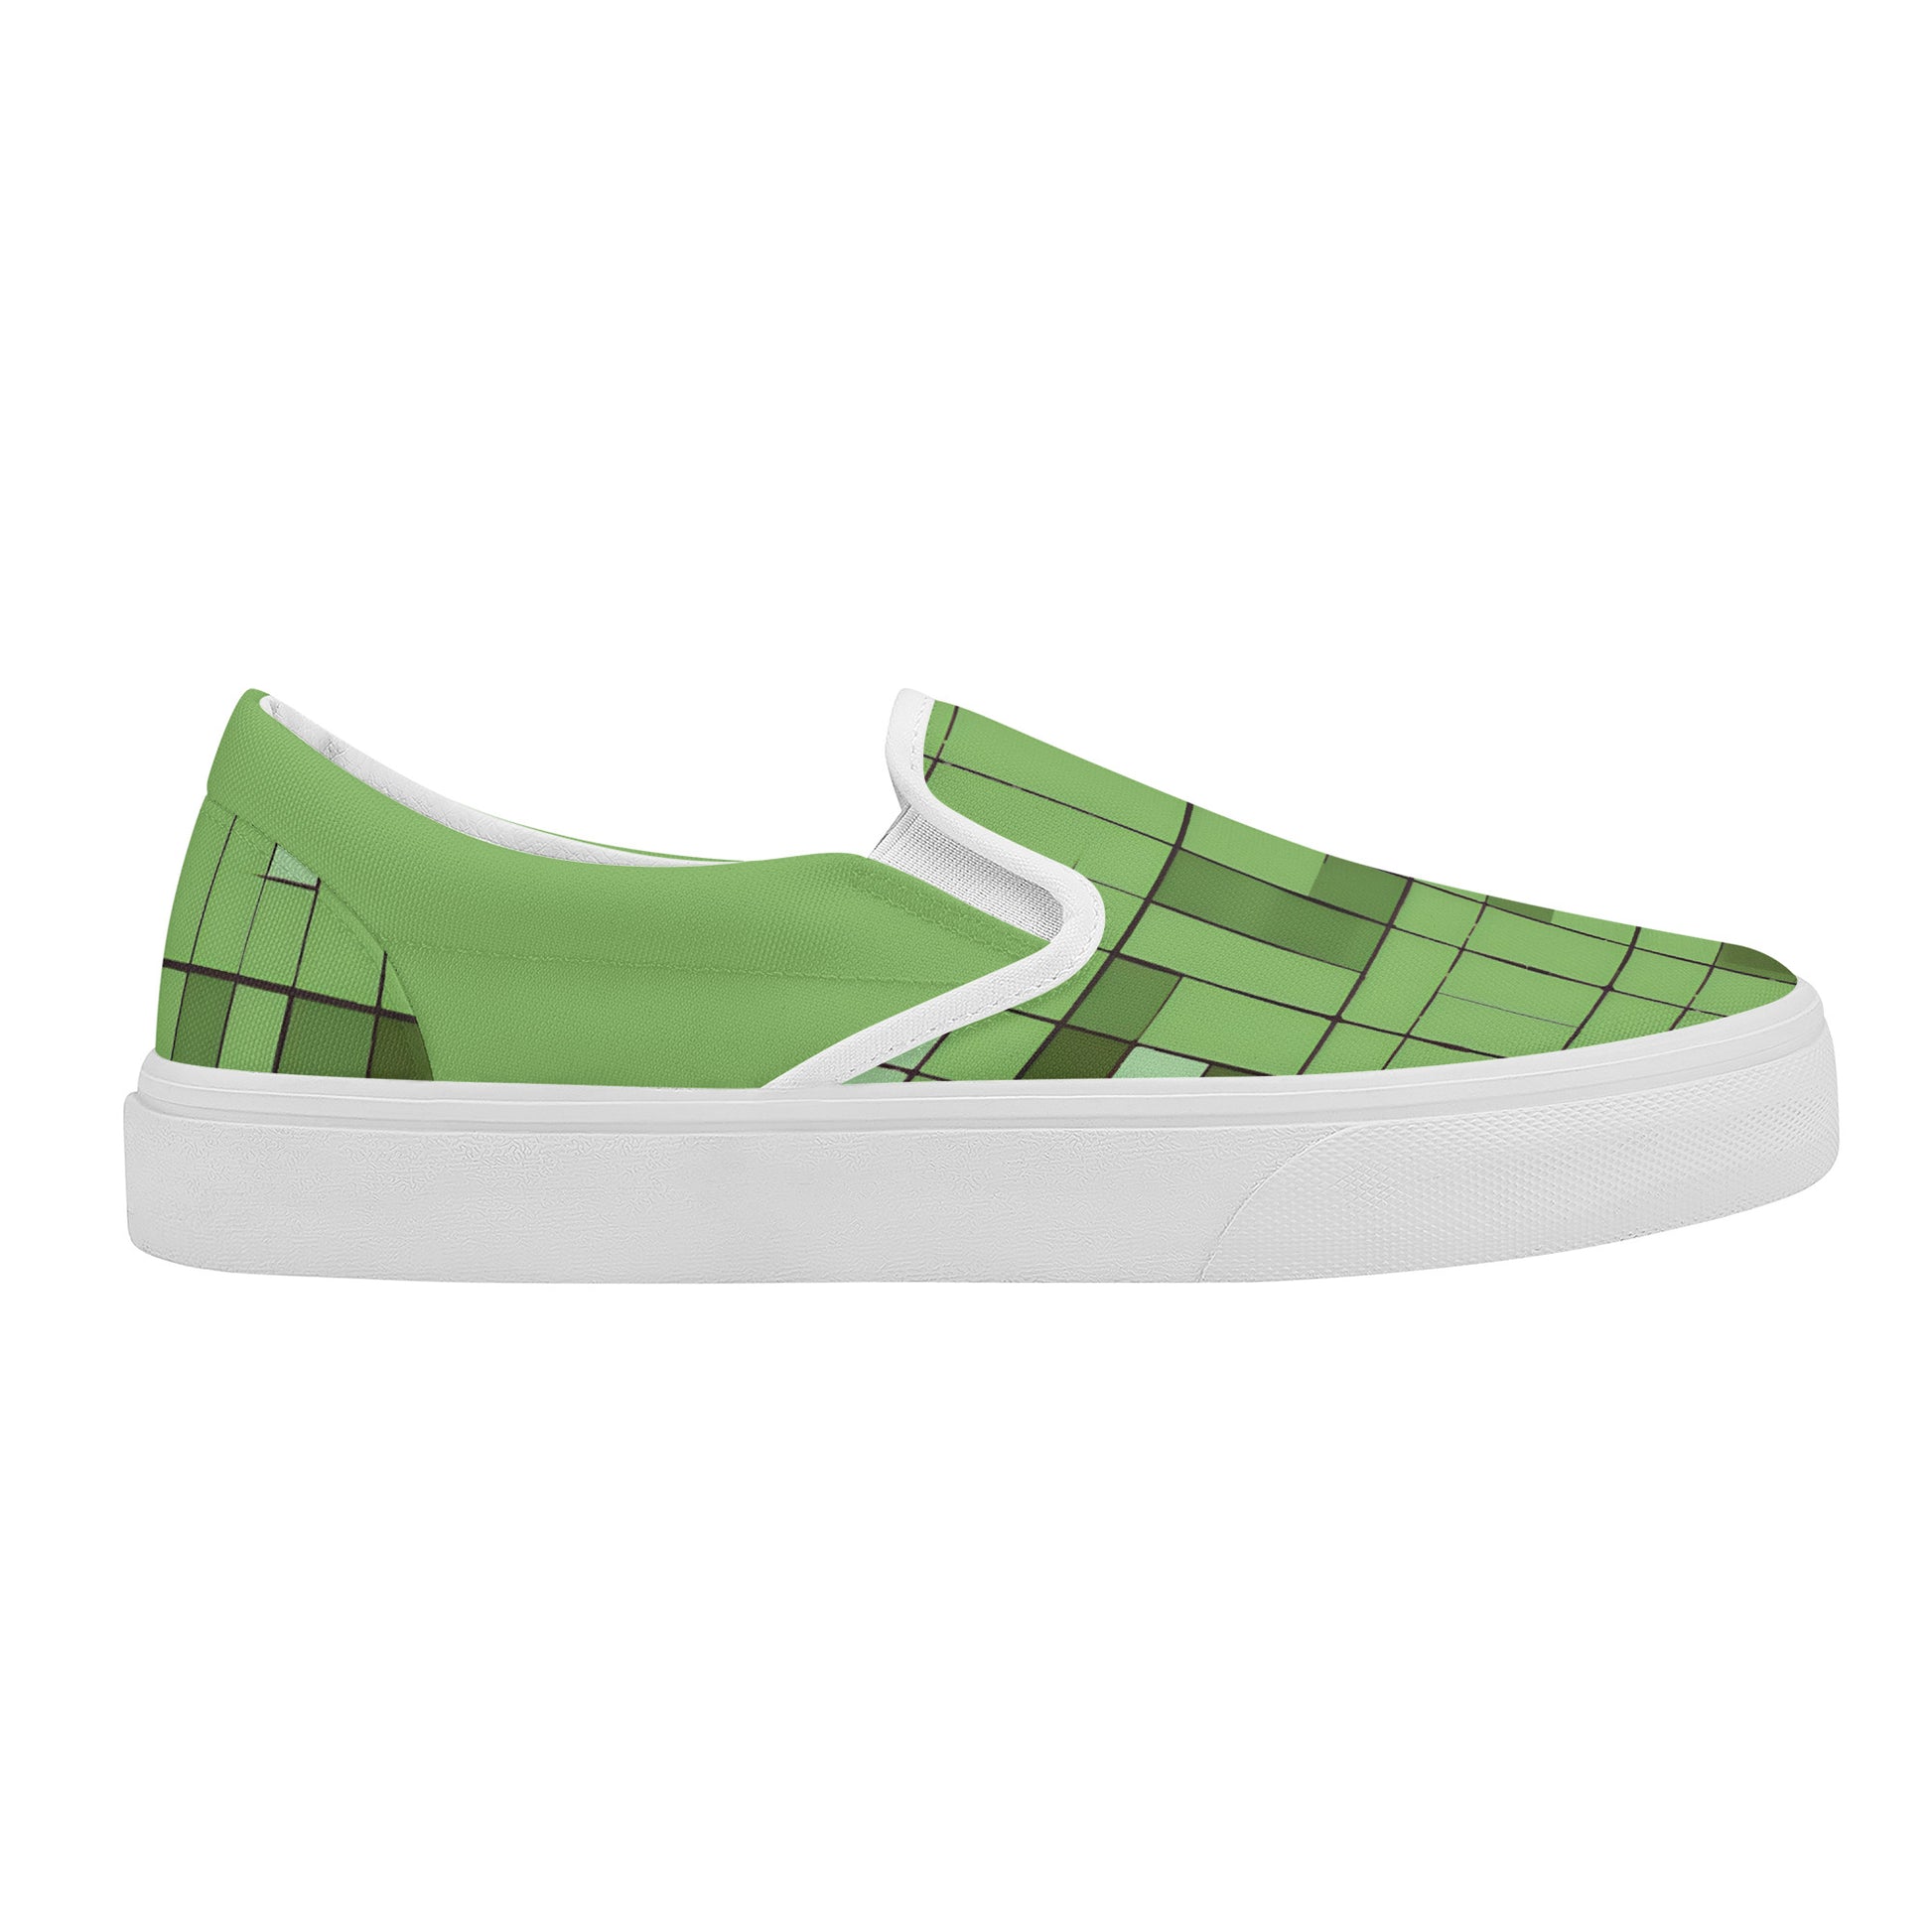 Green Street Skate Slip On Shoes